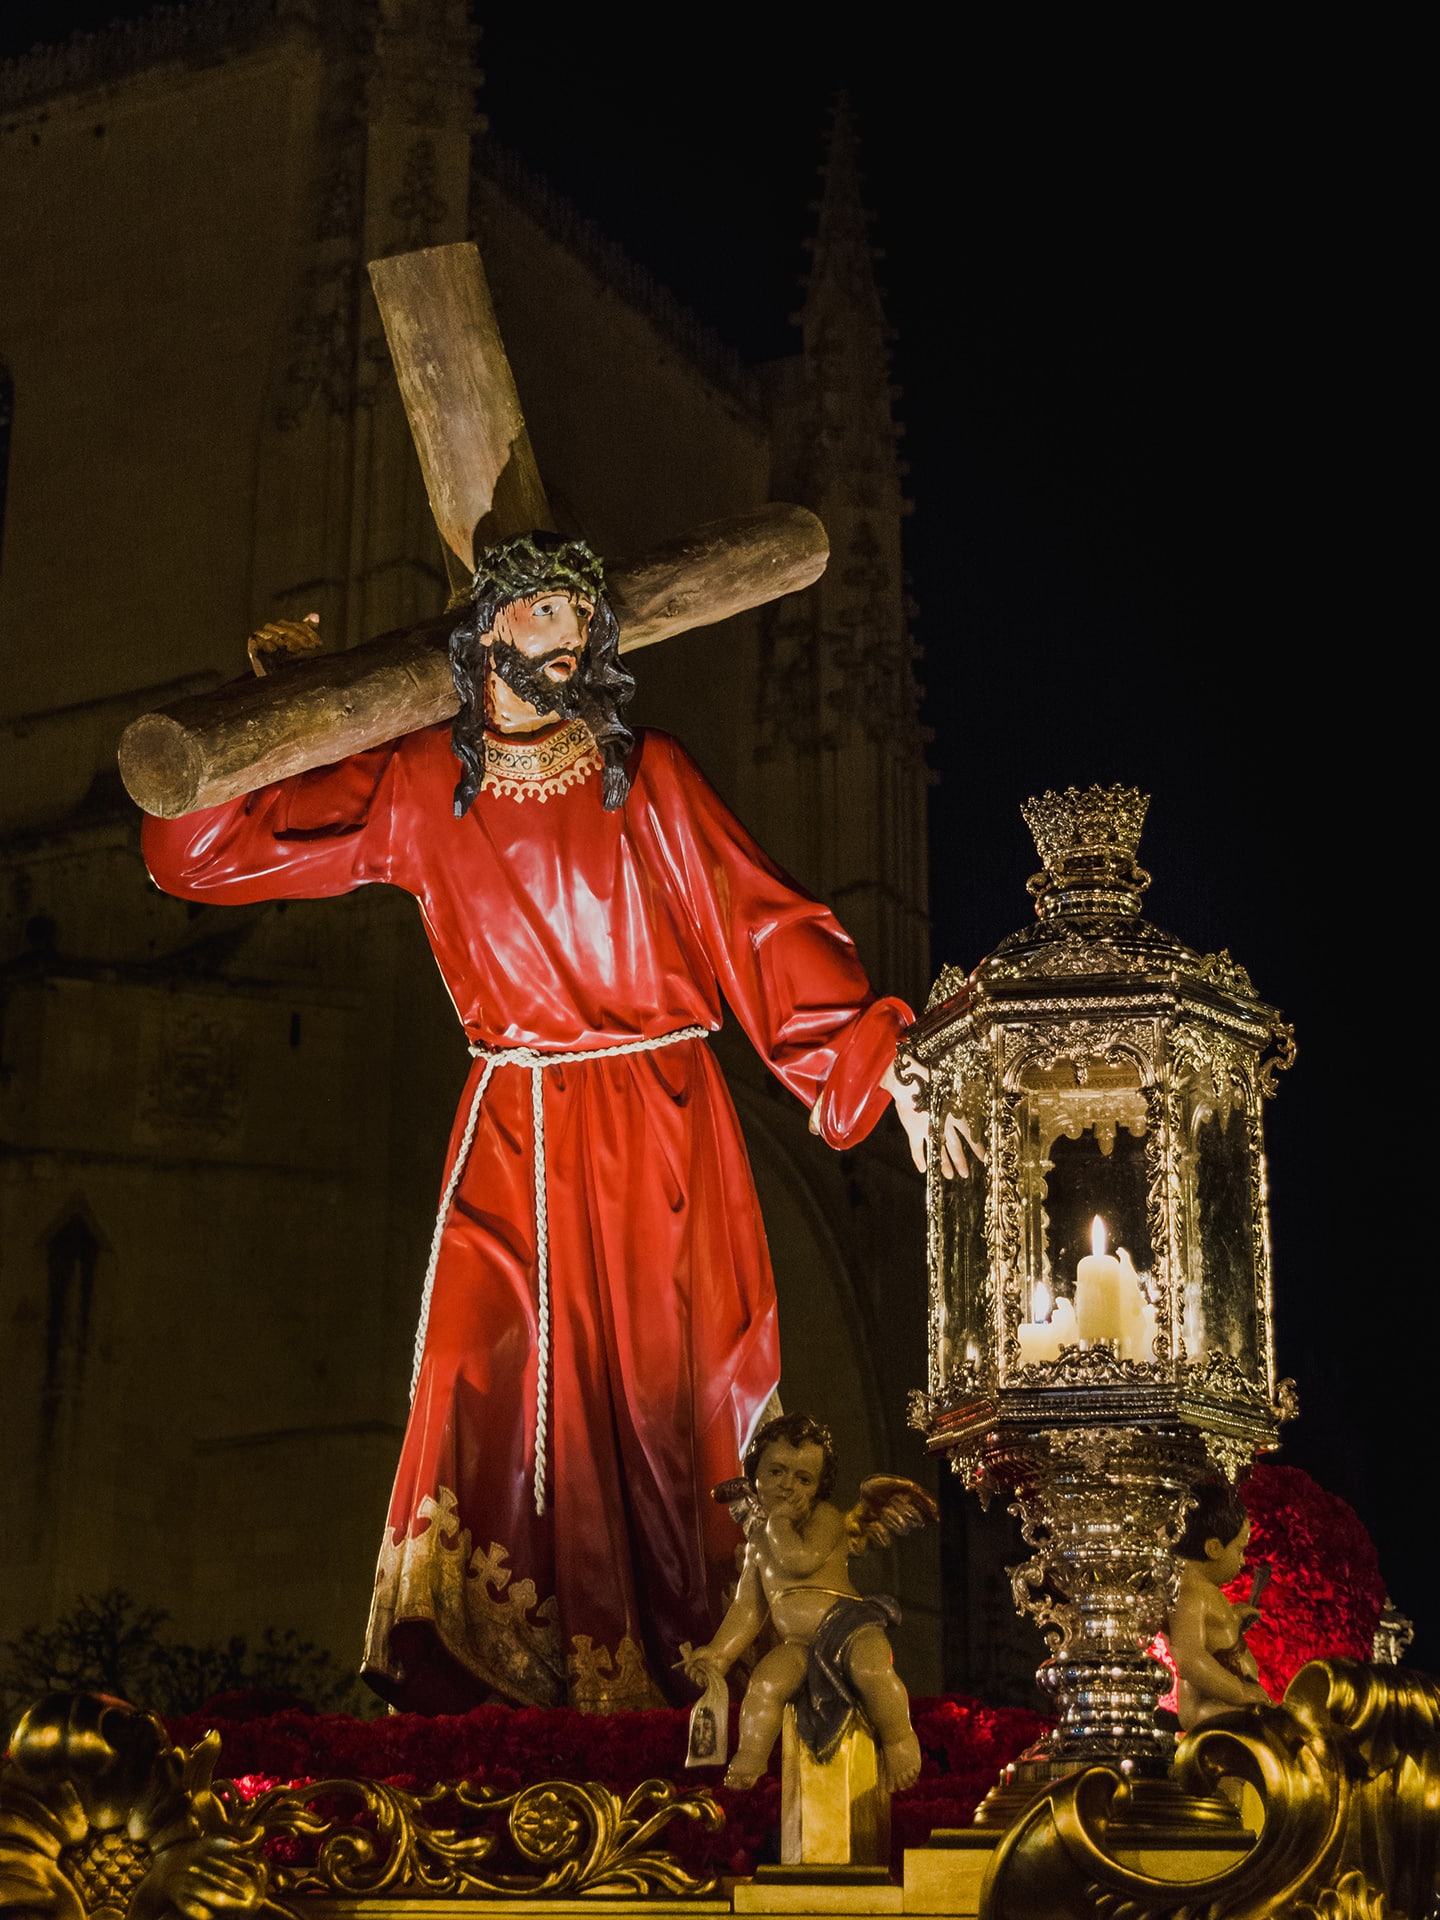 Jesus con la cruz a cuestas, ADEMAR, jueves santo, Segovia (Manu Rodrigo)